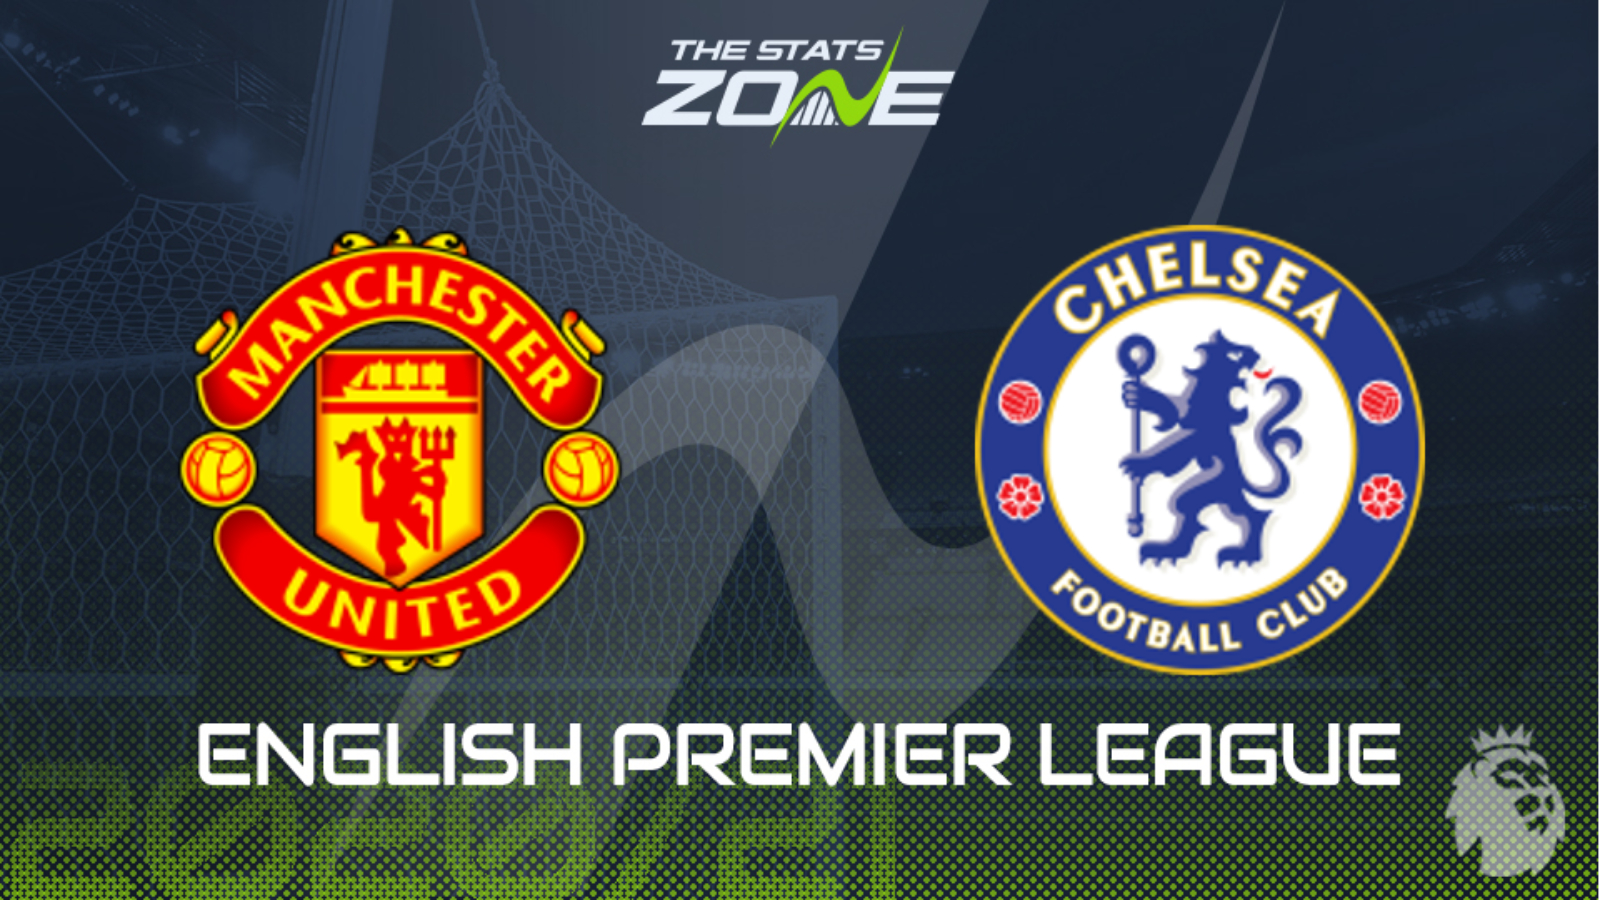 2020-21 Premier League – Man Utd vs Chelsea Preview & Prediction - The